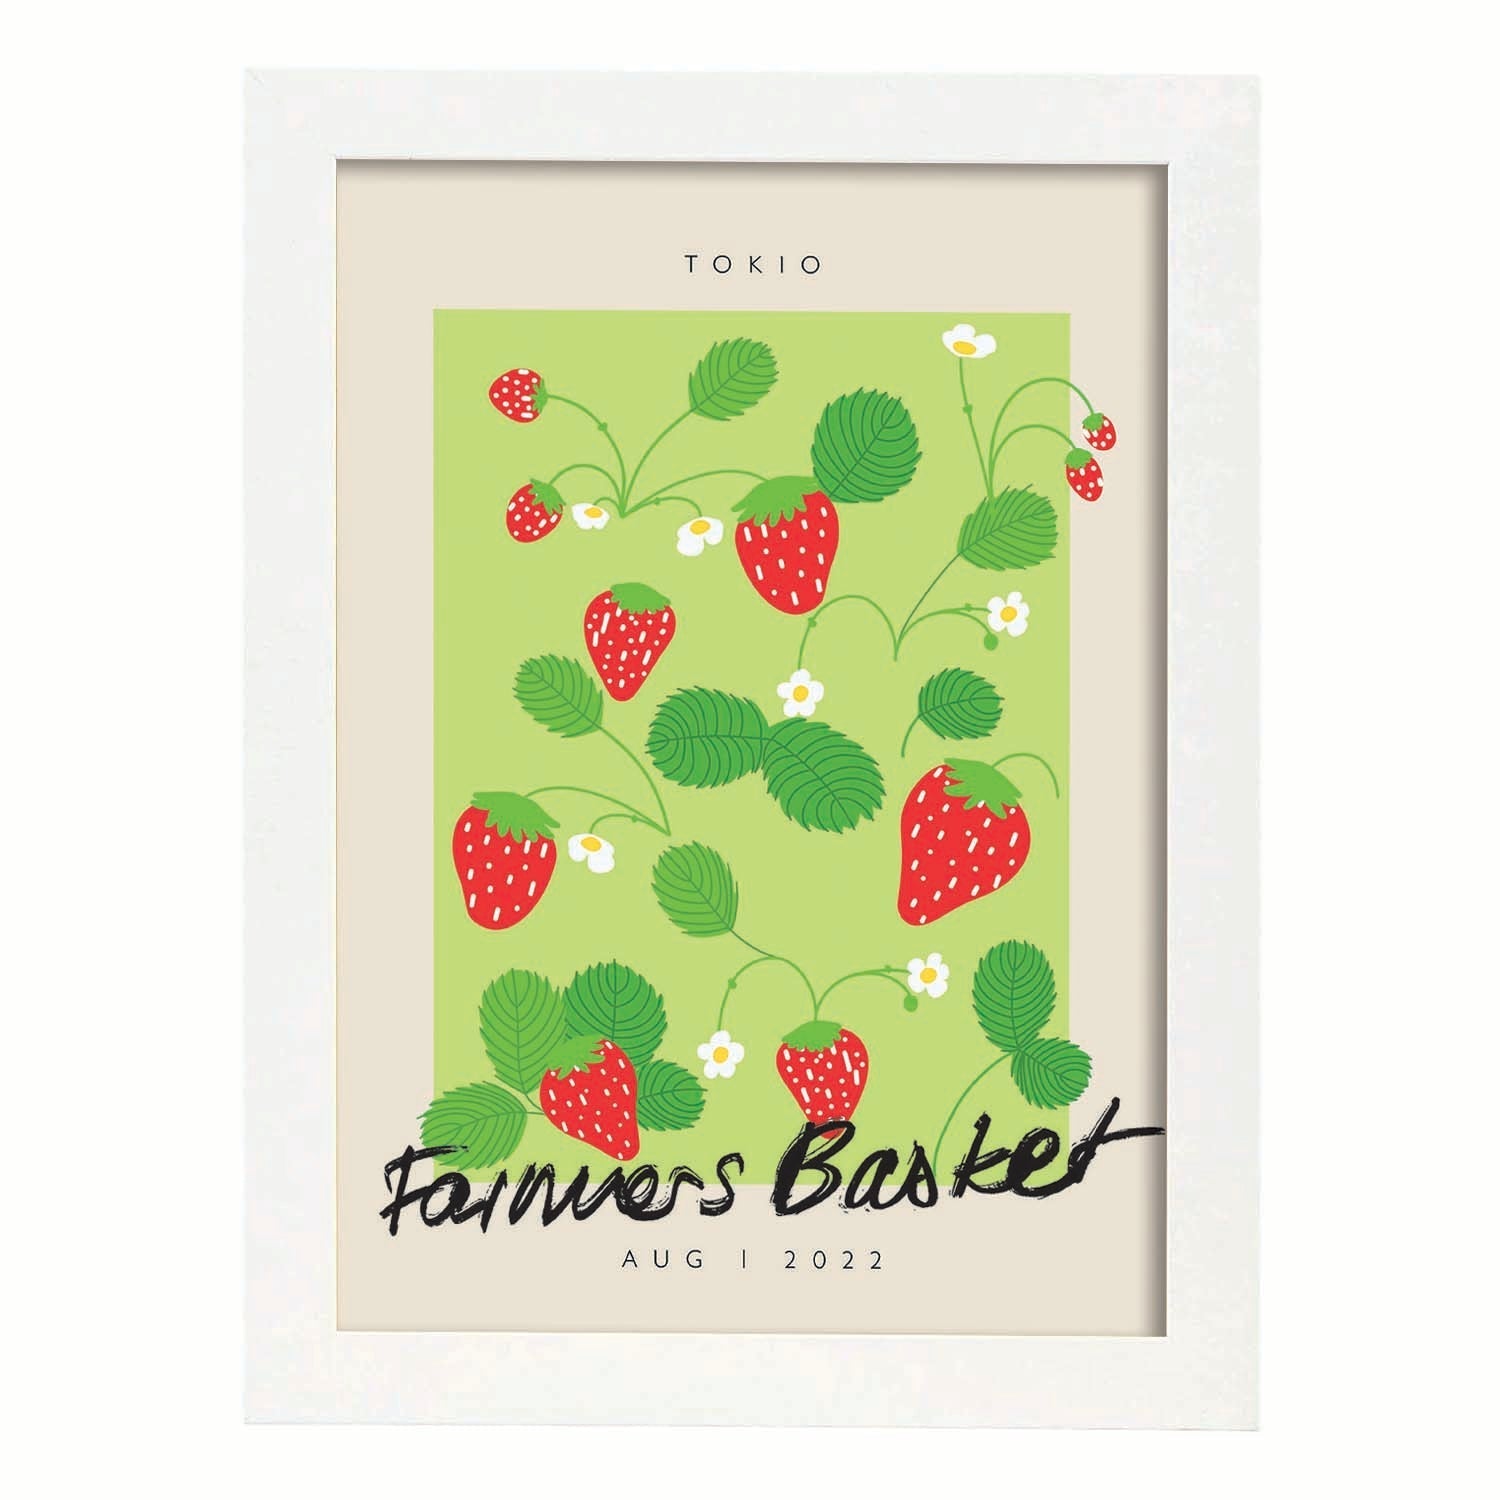 Lamina artistica decorativa con ilustración de Cesta de agricultores Tokio-Artwork-Nacnic-A3-Marco Blanco-Nacnic Estudio SL